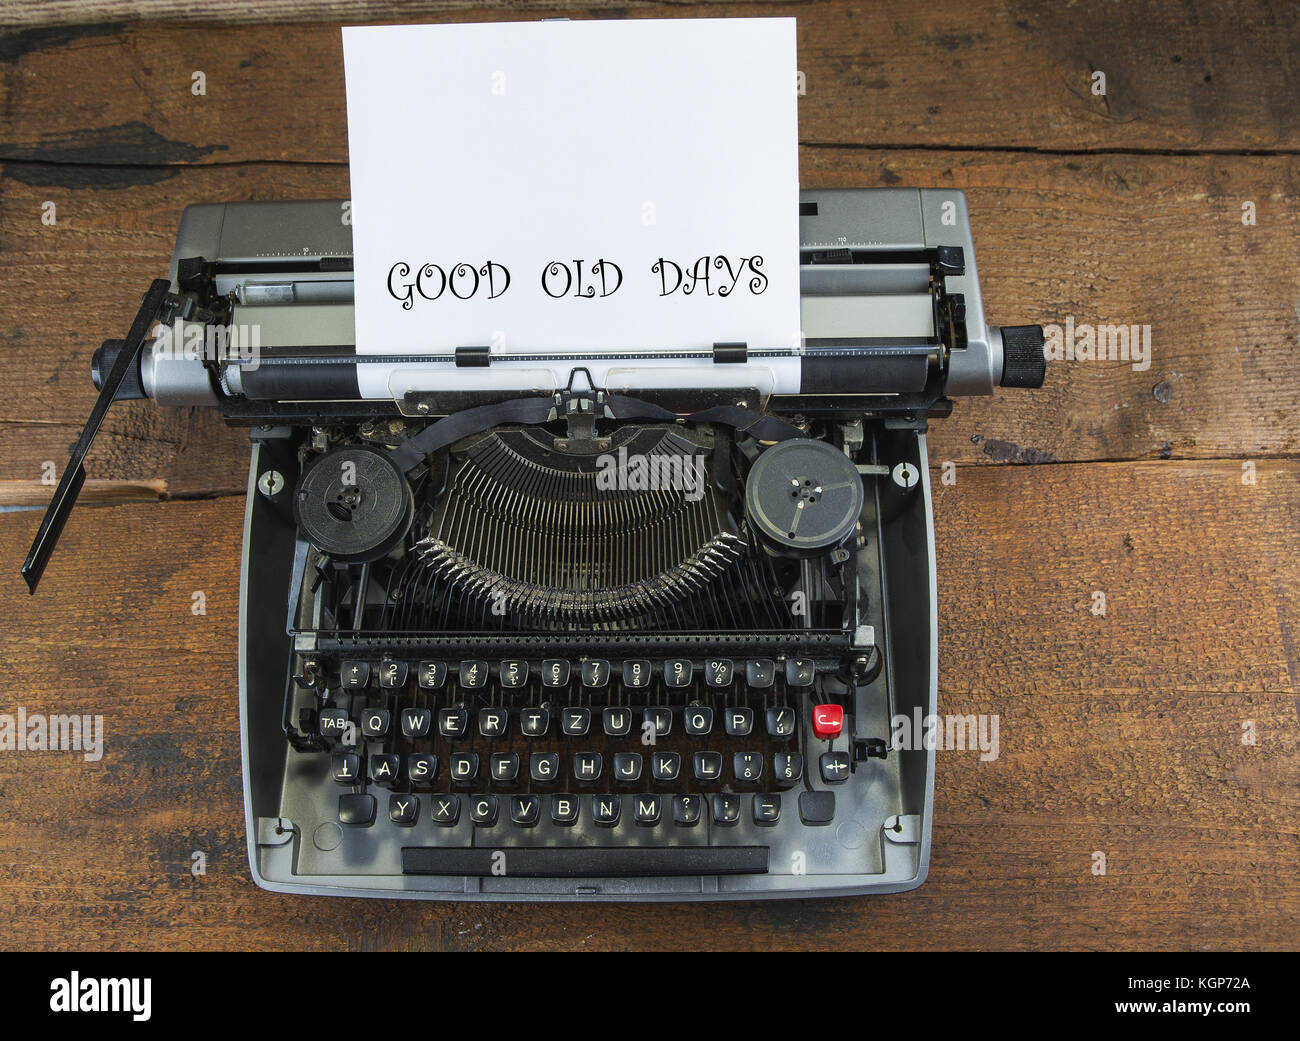 Vieille machine à écrire à partir de 1970 avec copie papier et l'espace. bon vieux temps. Banque D'Images